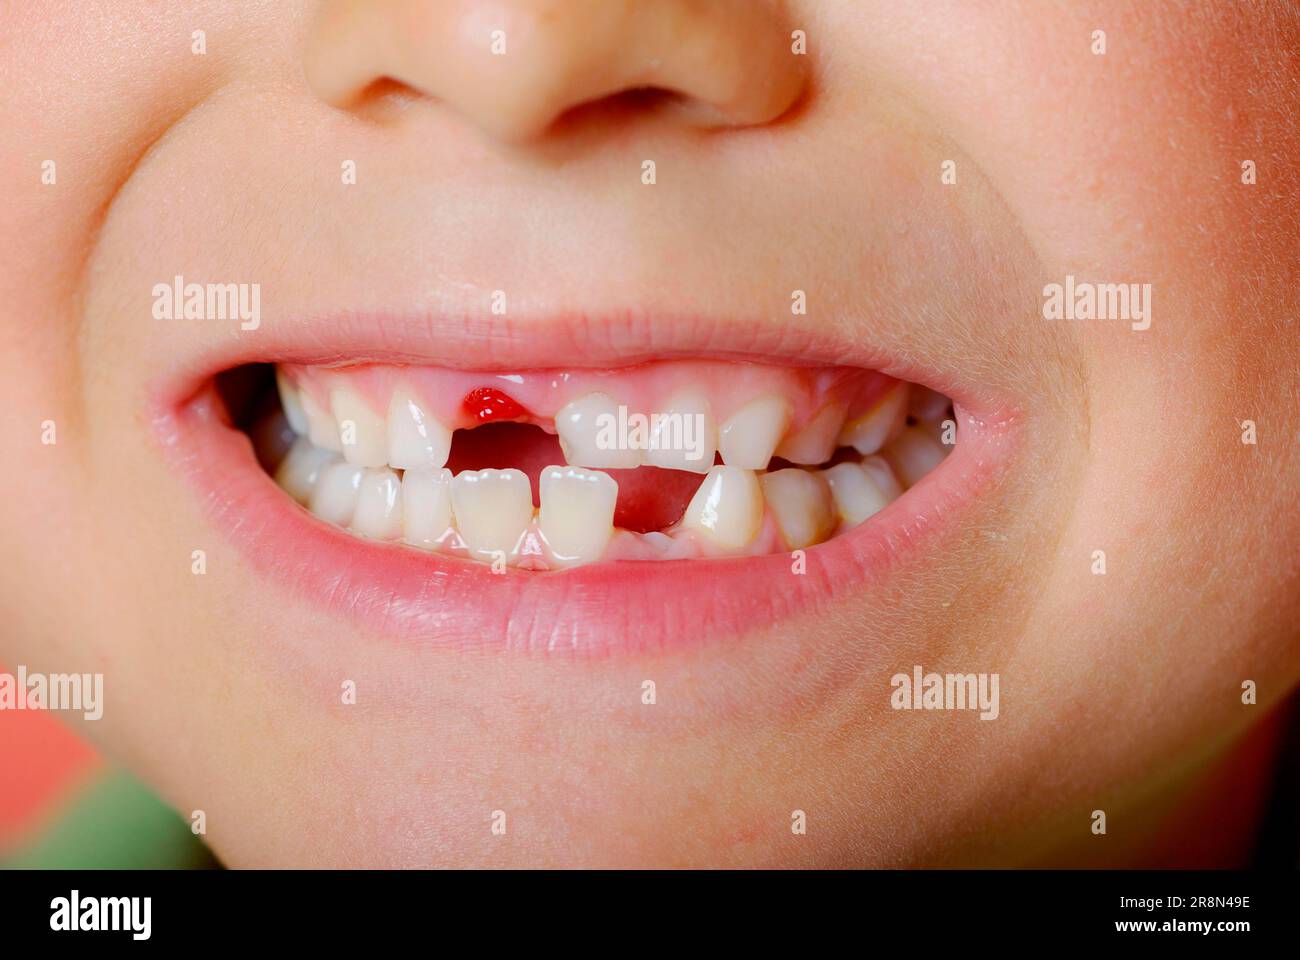 https://c8.alamy.com/compes/2r8n49e/nino-con-huecos-entre-los-dientes-espacio-entre-los-dientes-espacio-entre-los-dientes-diente-de-leche-dientes-de-leche-diente-dientes-2r8n49e.jpg